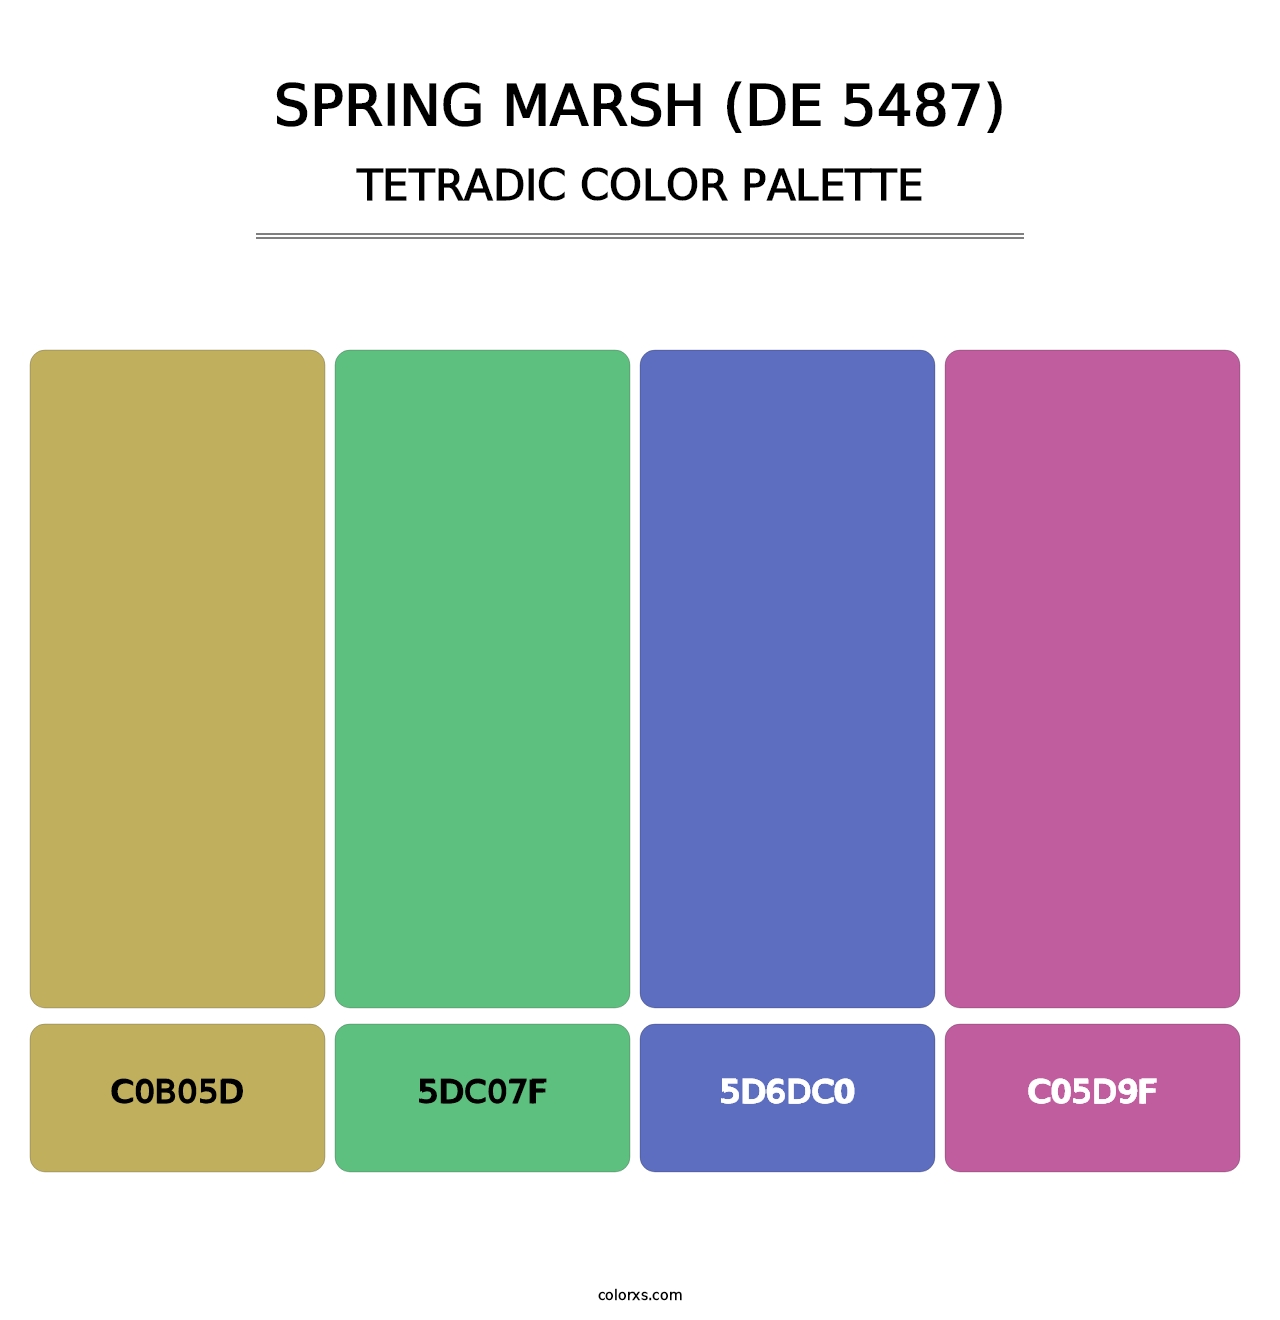 Spring Marsh (DE 5487) - Tetradic Color Palette